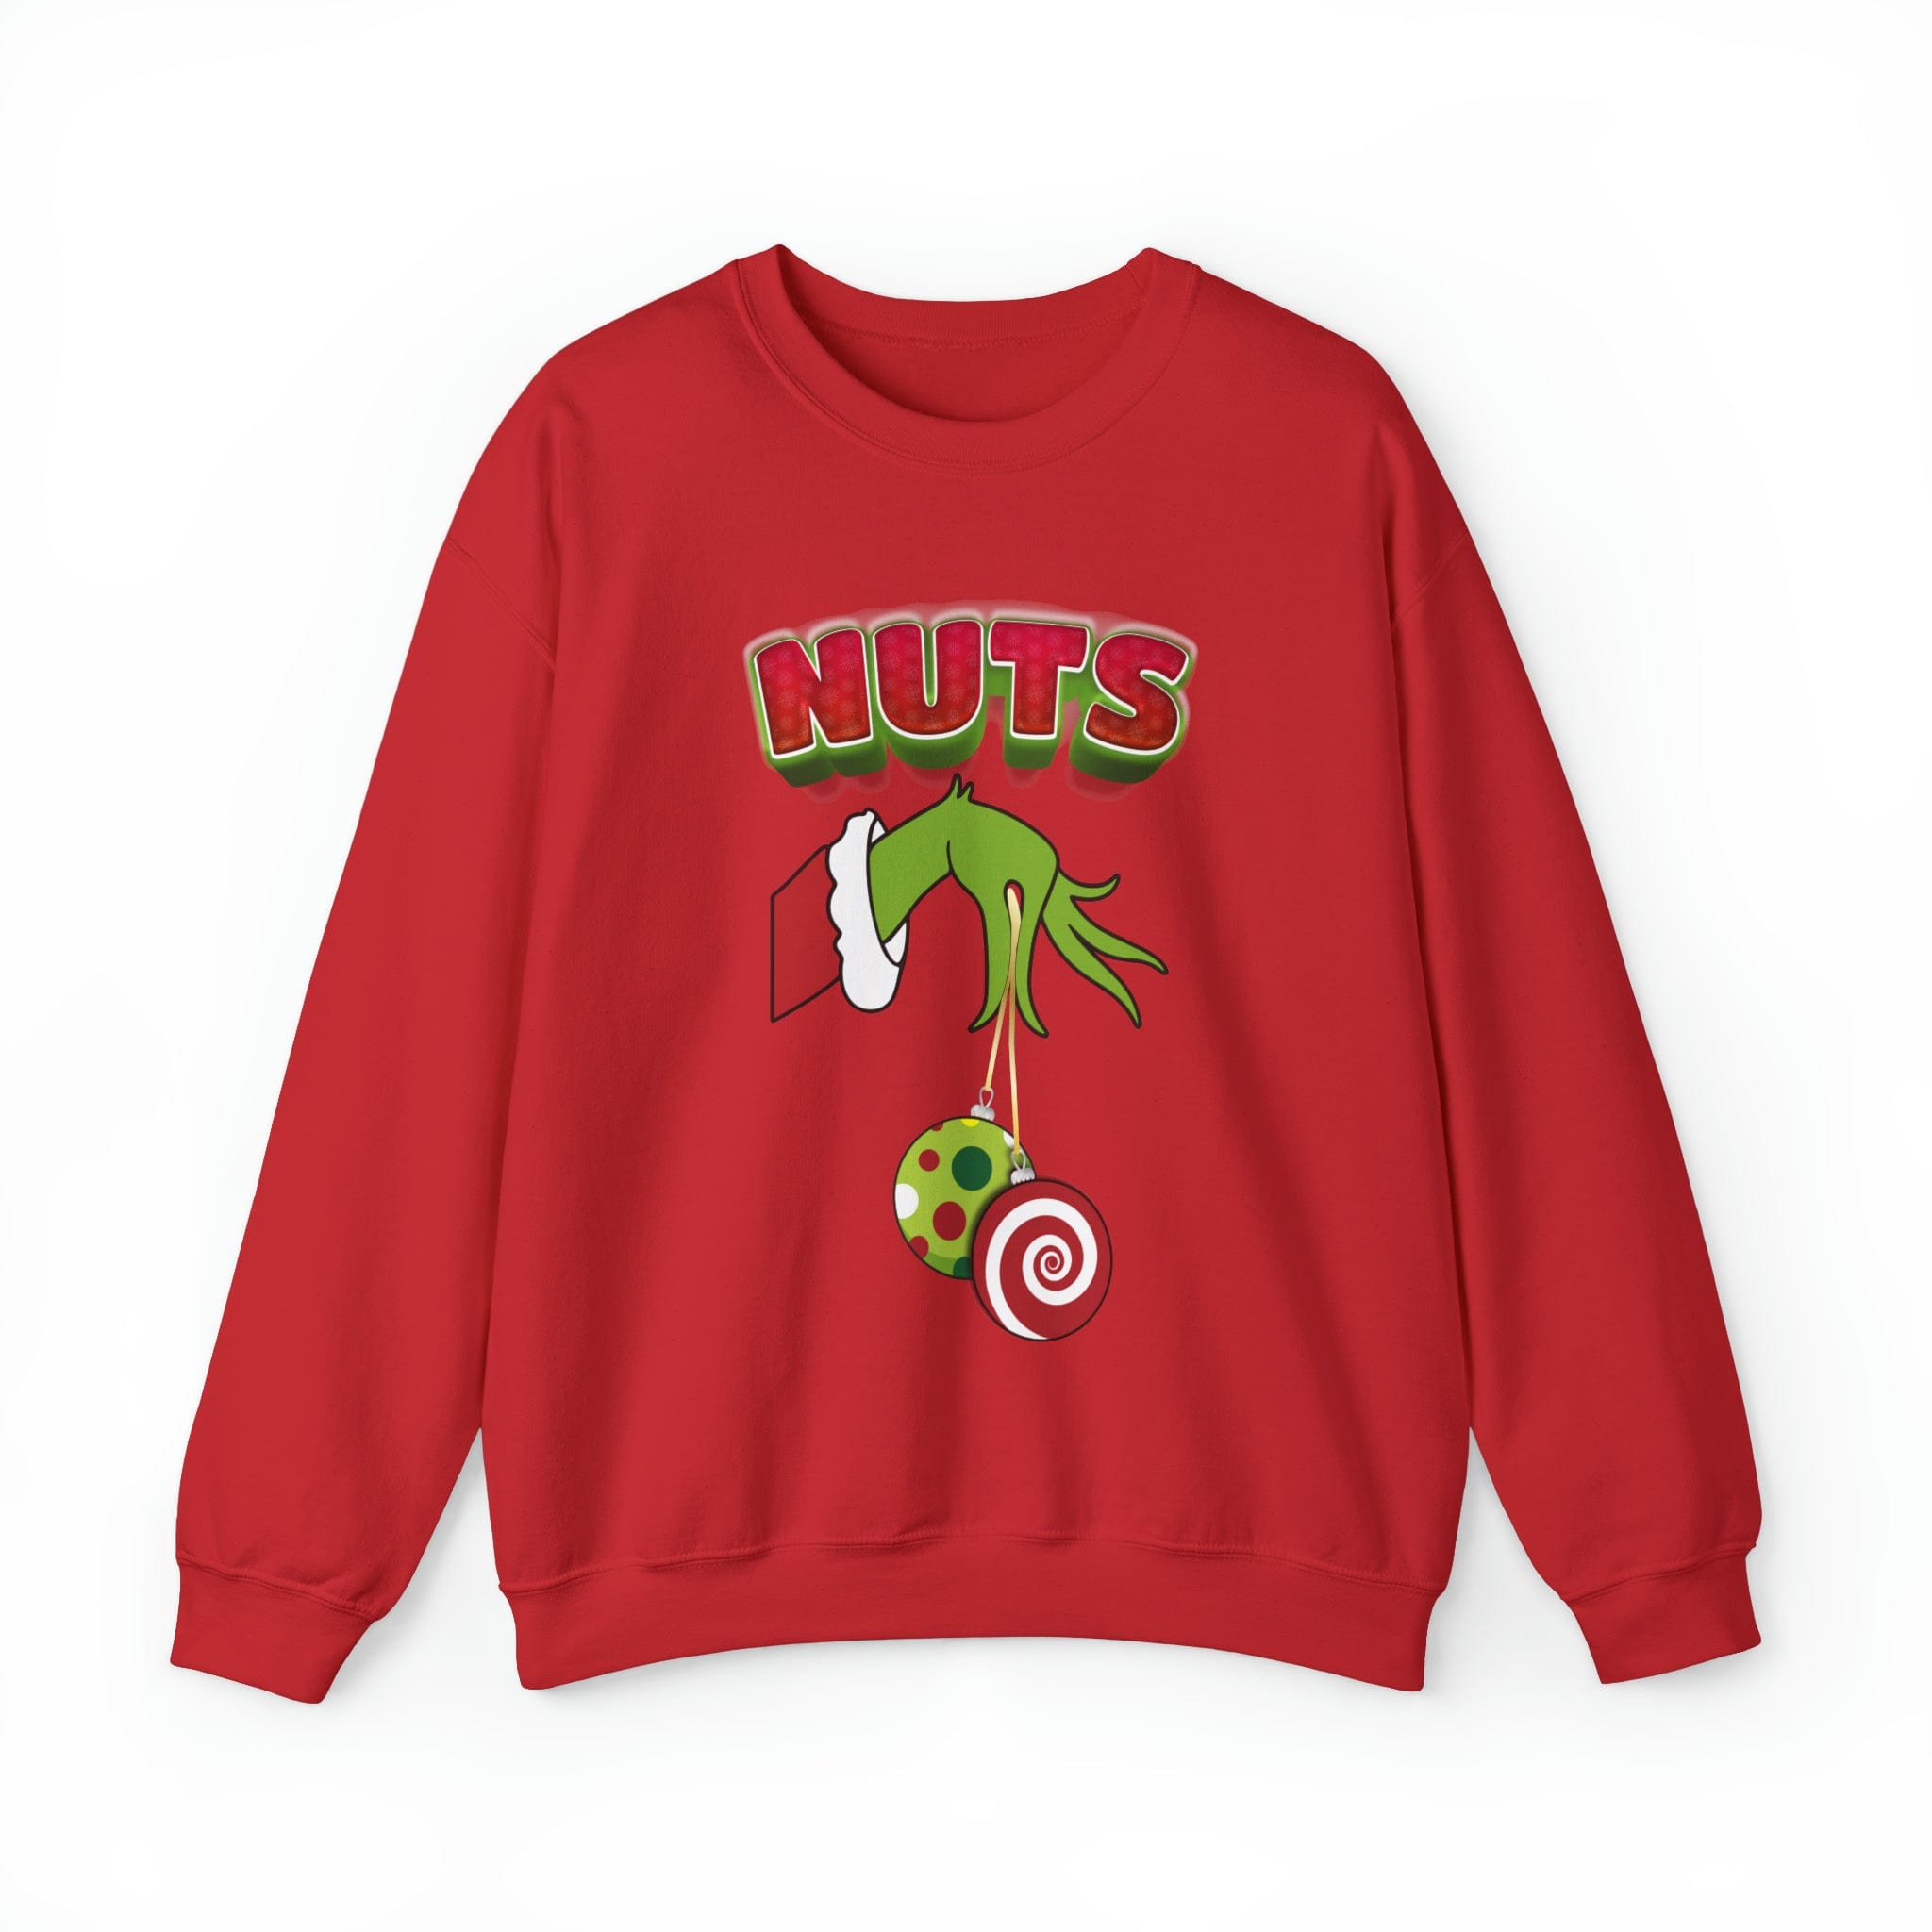 Nuts sweatshirt